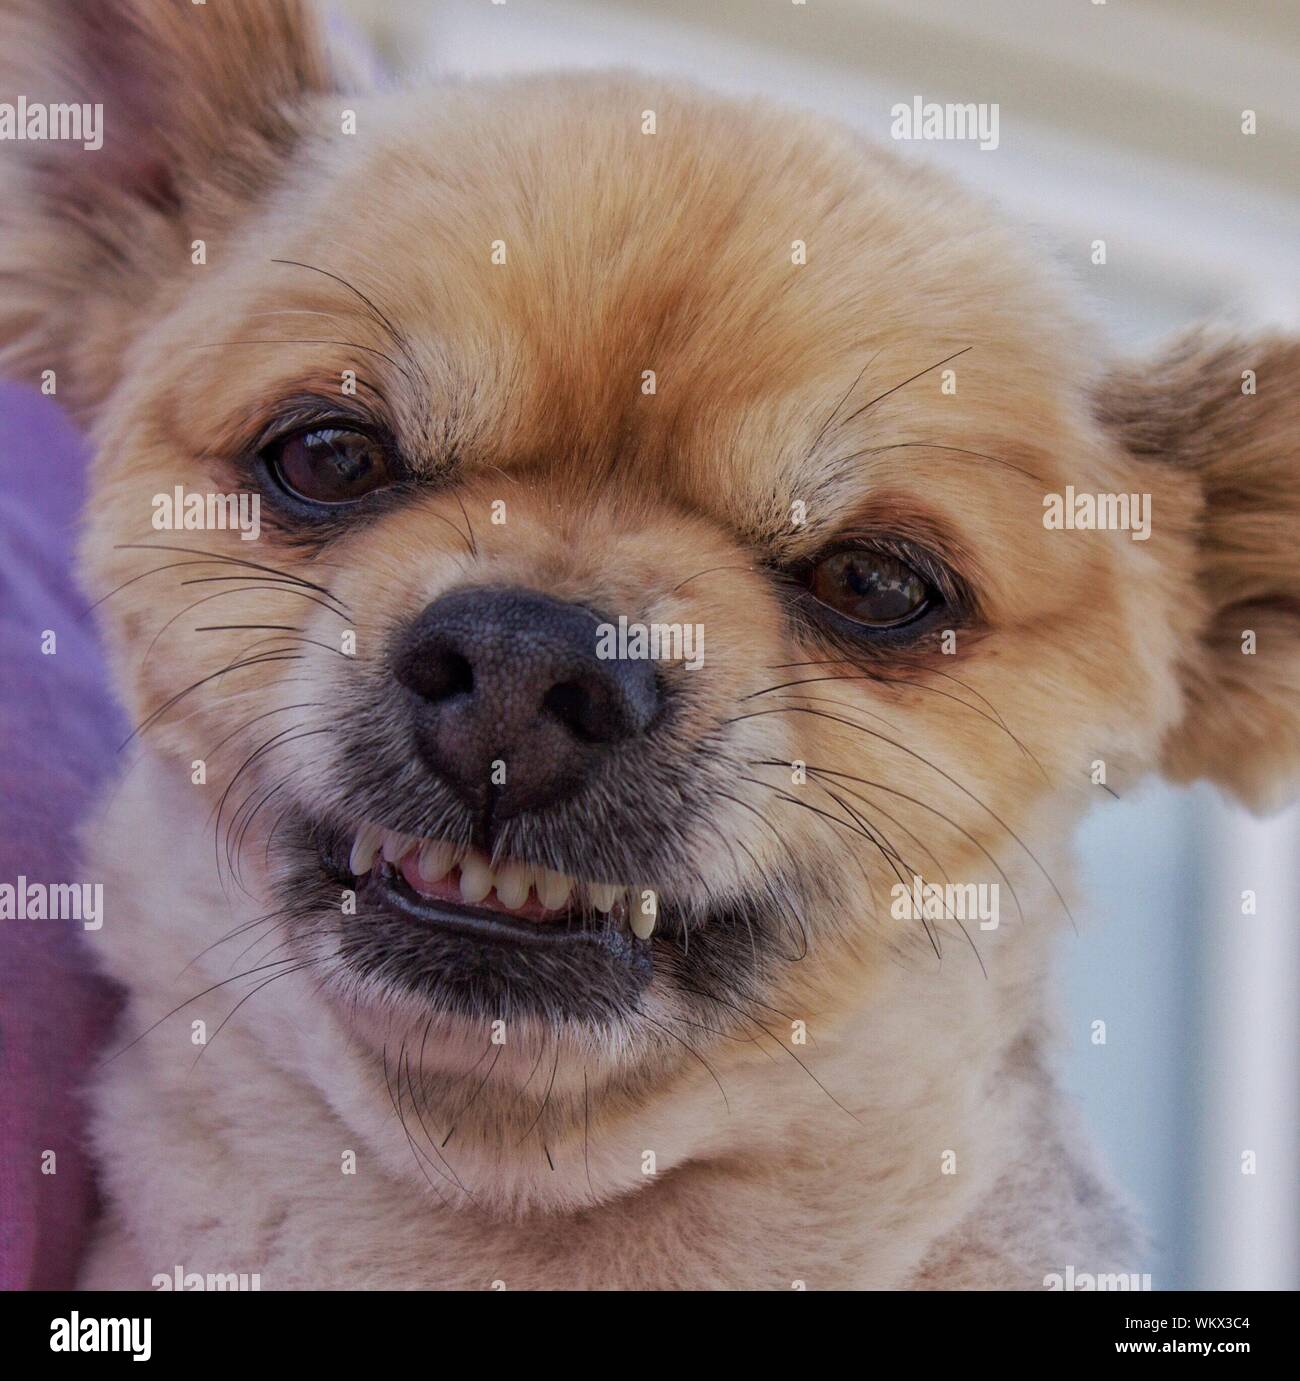 Close-up retrato de perro enojado Foto de stock